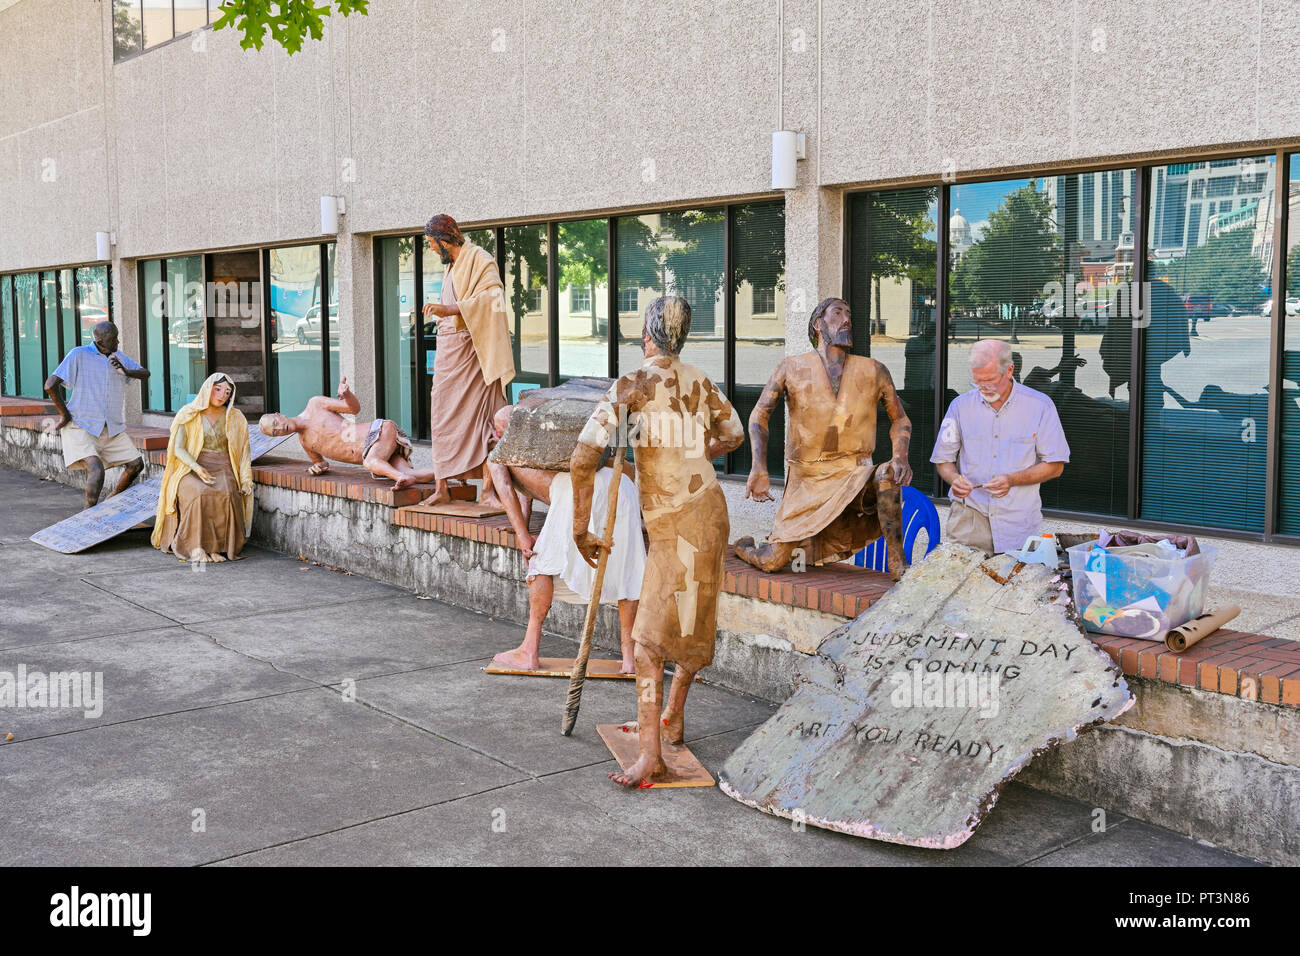 Religiöse Figuren mit der Darstellung der menschlichen Erfahrung auf dem Gehweg in der Innenstadt von Montgomery Alabama, USA. Stockfoto